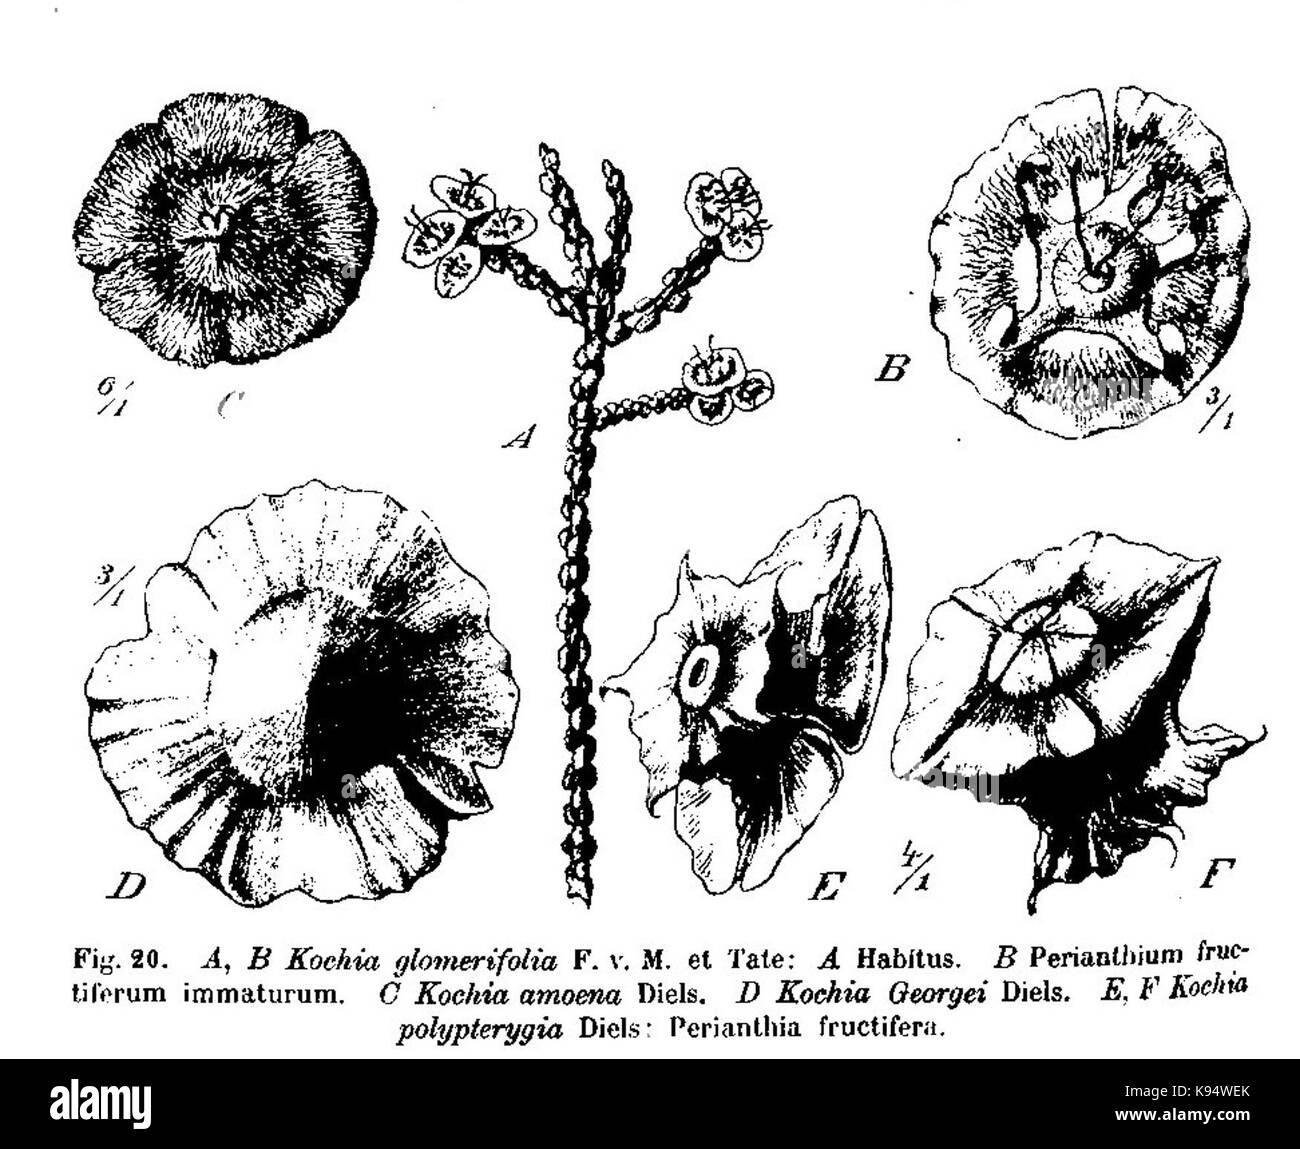 Kochia glomerifolia, Kochia amoena, Kochia georgei, Kochia polypterygia Stock Photo